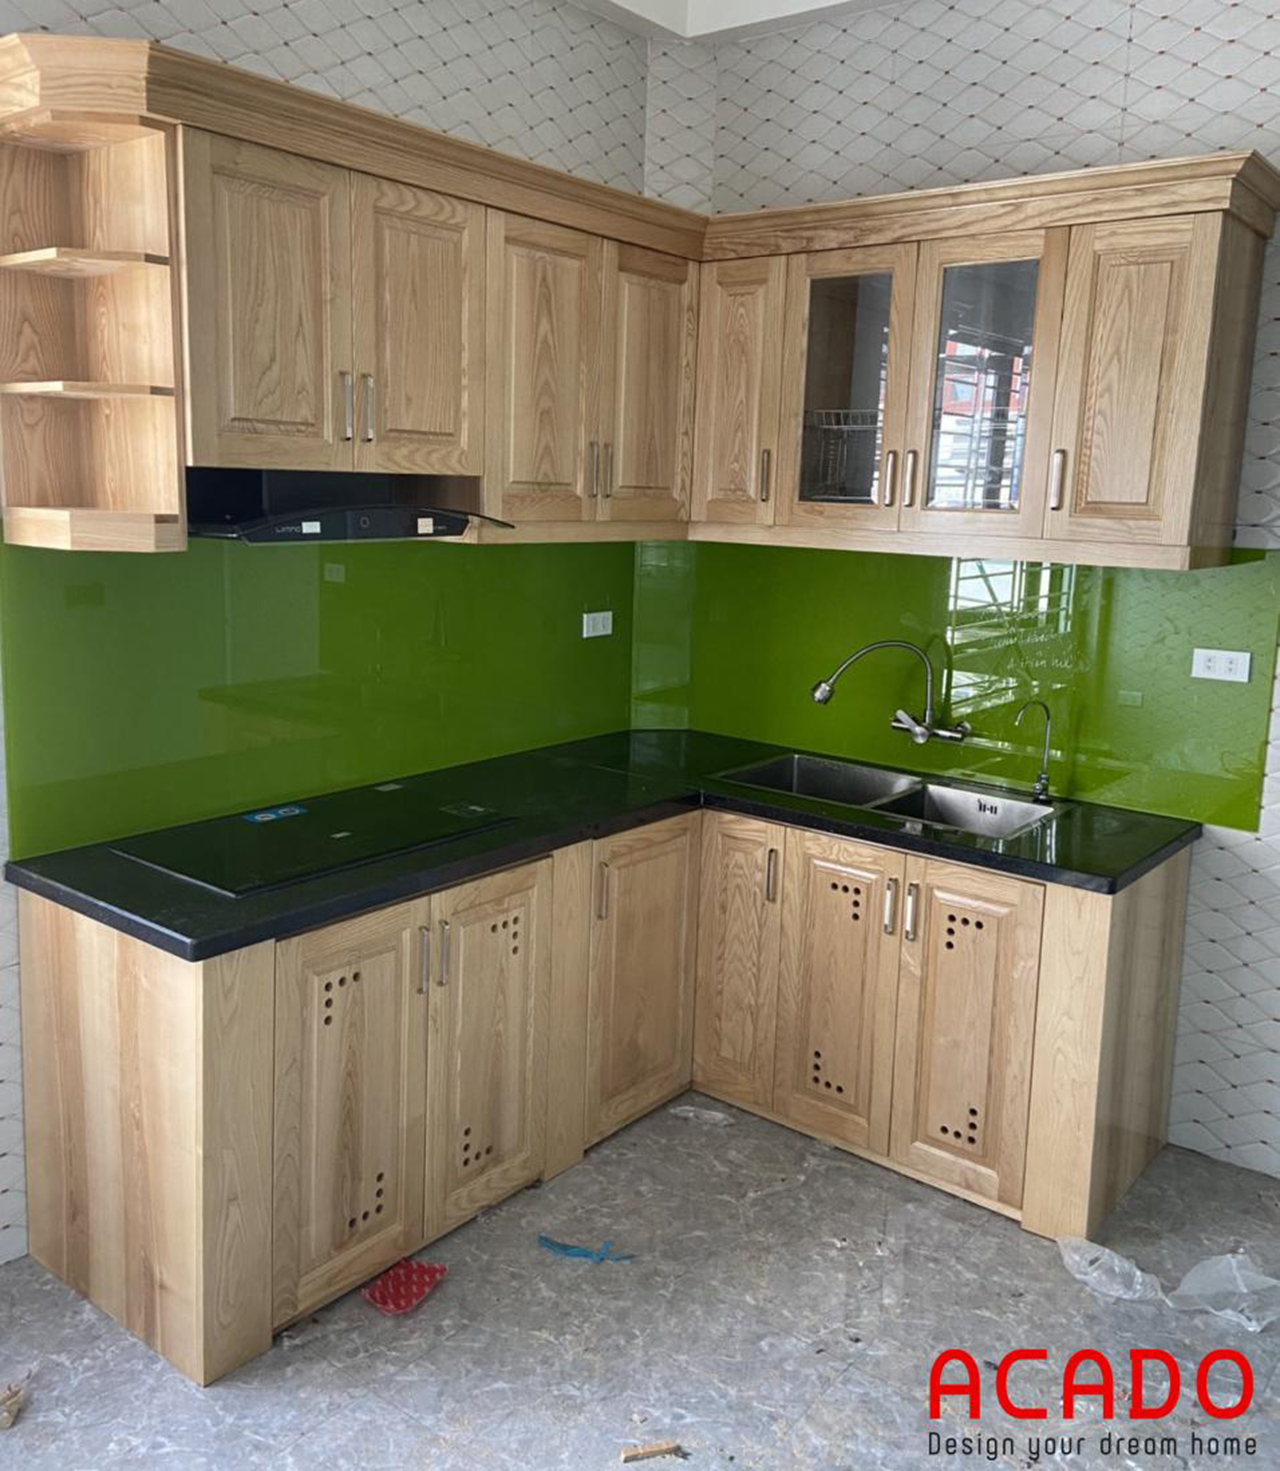 Sử dụng kính bếp màu xanh lá cây hiện đại và trẻ trung làm điểm nhấn cho căn bếp